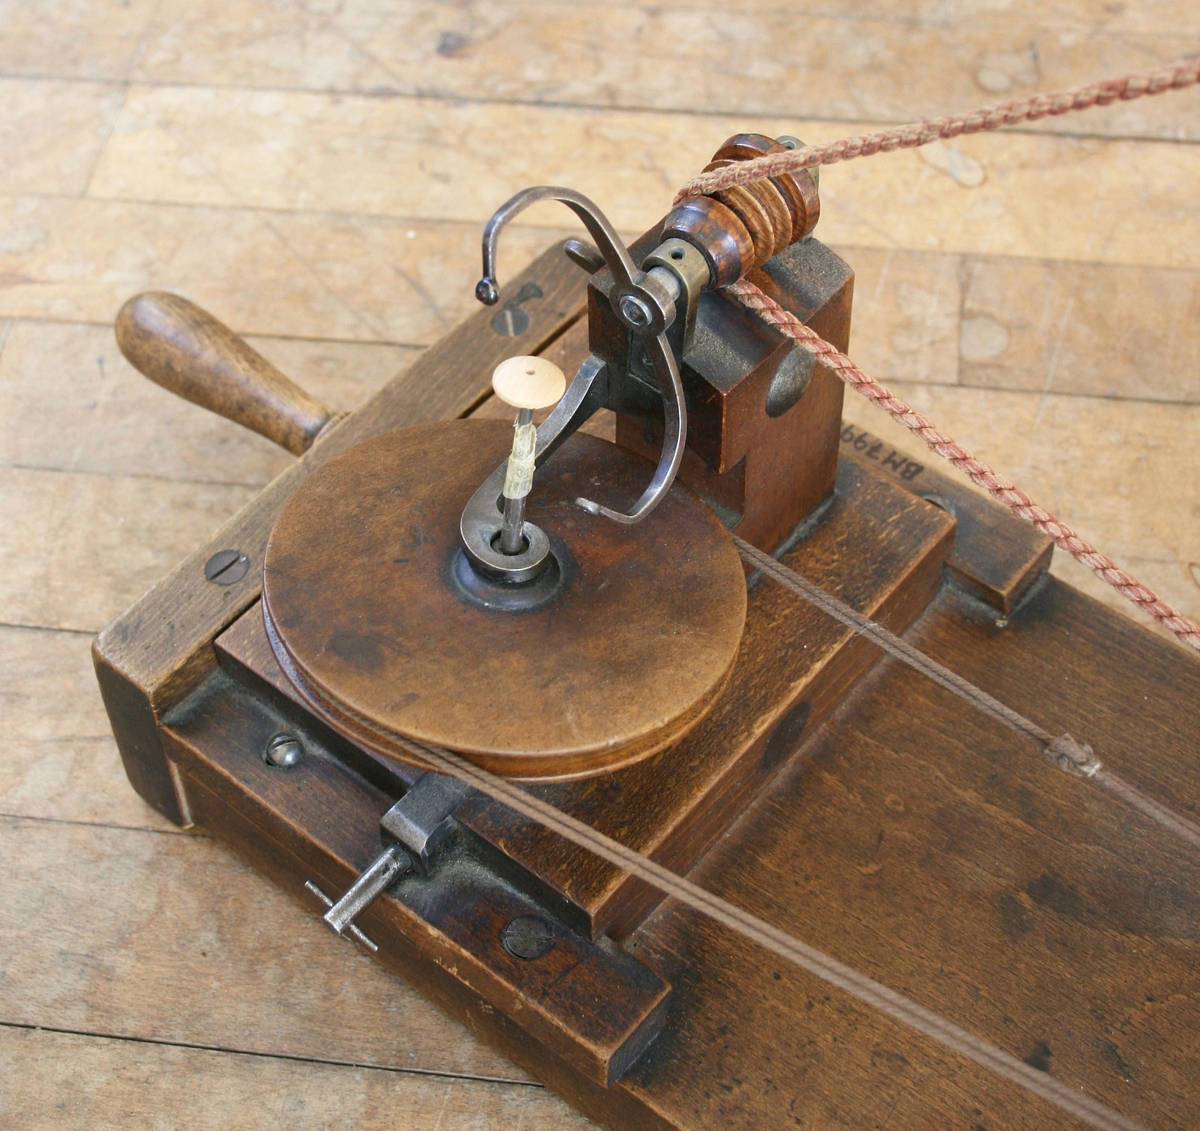 Maskinen är byggd på en träplatta. På plattan ett handvevat hjul som genom ett snöre driver en bygel som lindar garnet runt knappen. Knappen roterar runt. Märkt: M. GRIEBEL MAGDEBURG

Funktion: Lindning av trådknappar